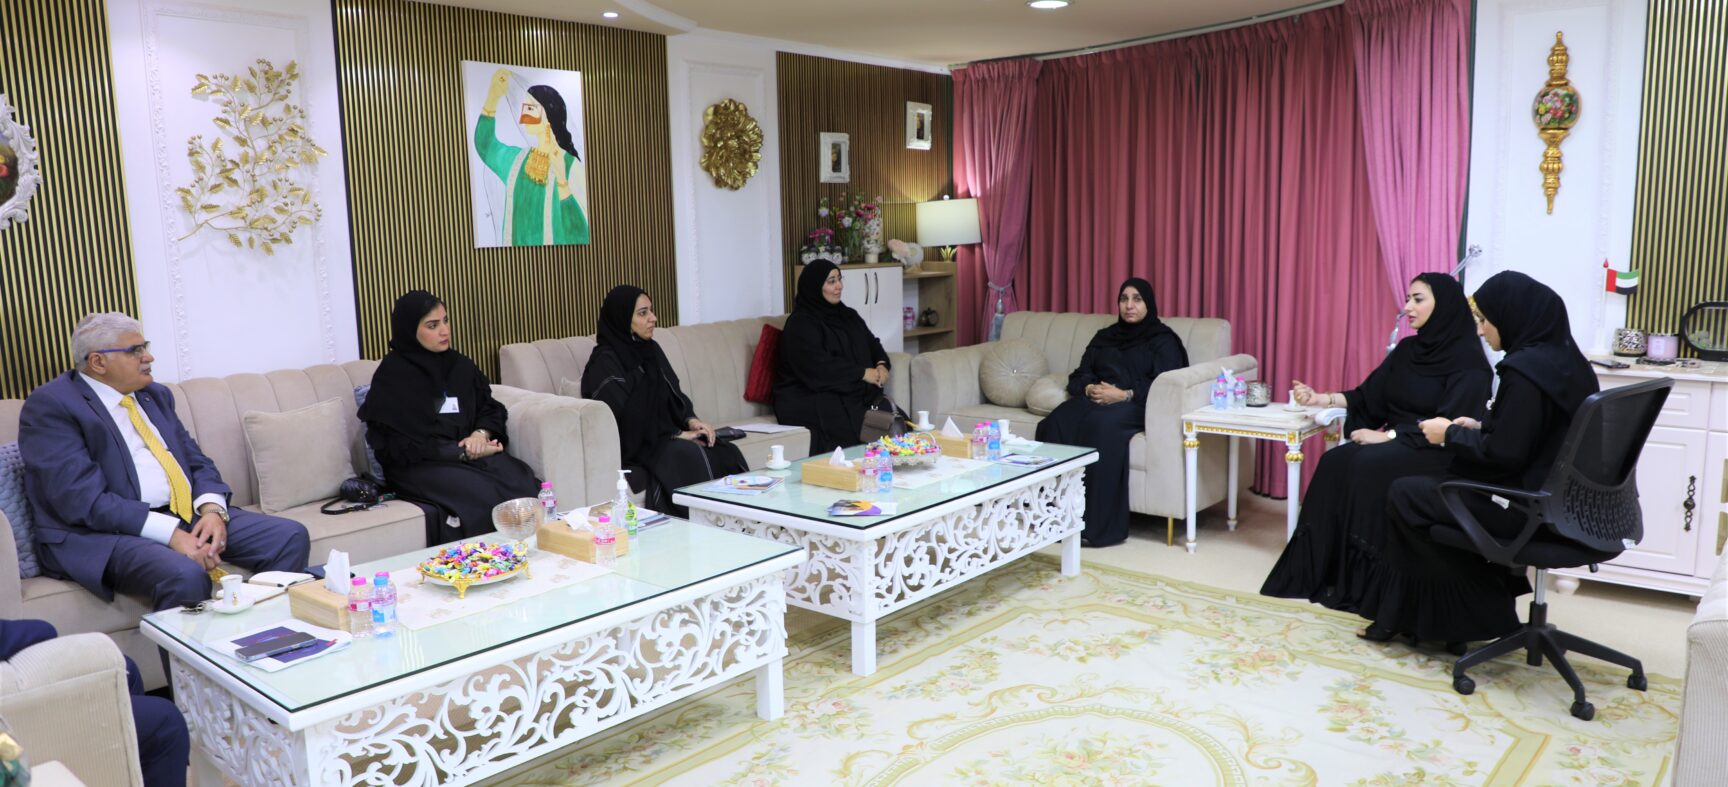 زيارة وزارة تنمية المجتمع لمؤسسة حماية للمرأة والطفل في عجمان